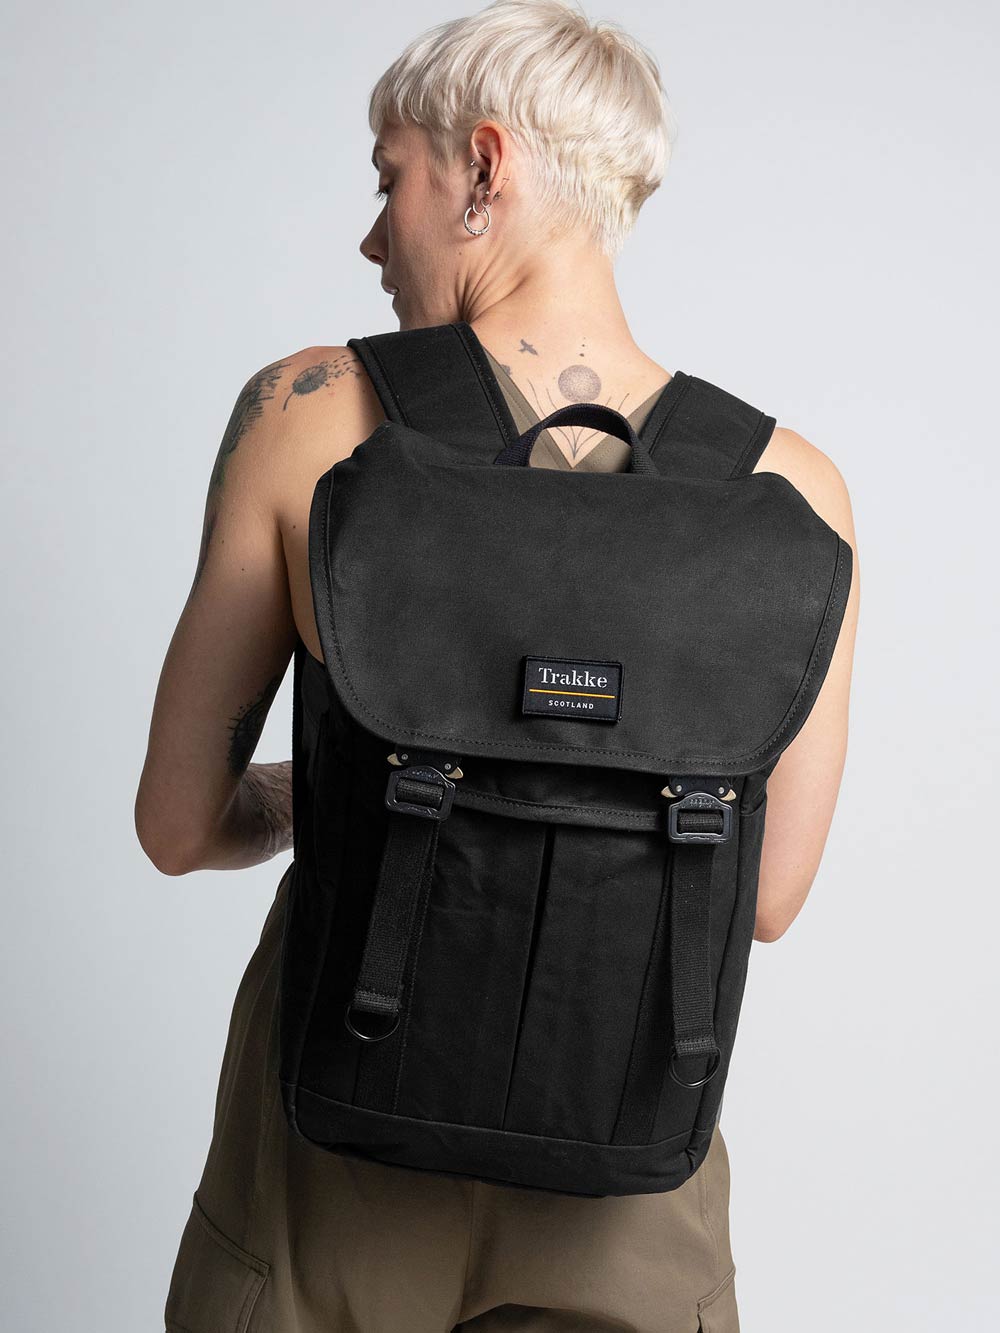 Trakke | Waxed Canvas Backpacks, Messenger Bags & Accessories. (trakke) -  Profile | Pinterest